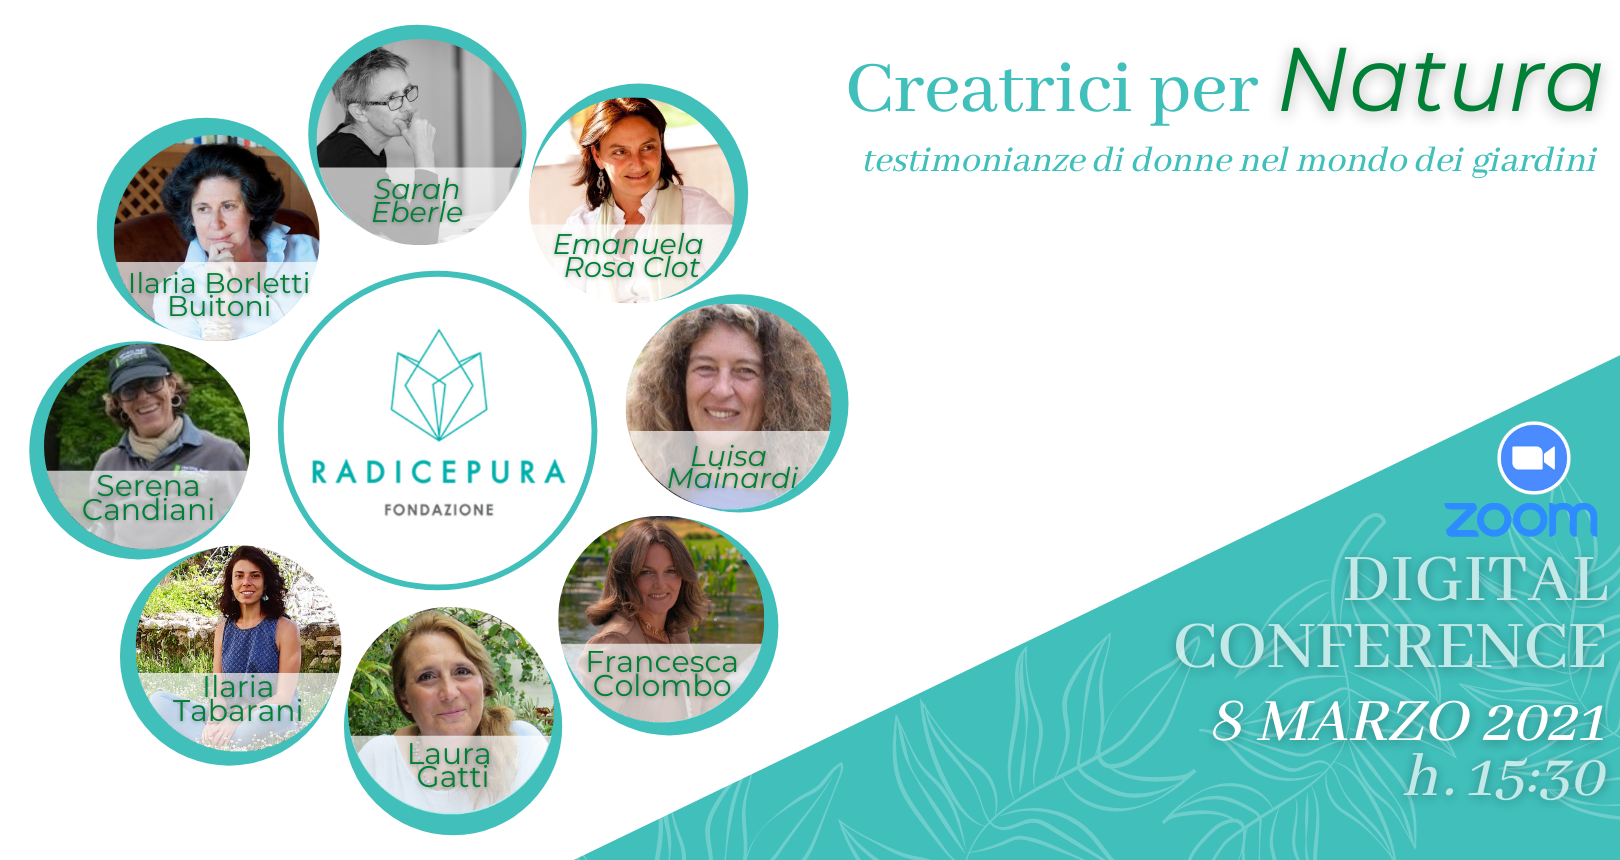 Conferenza Creatrici per natura | Fondazione Radicepura